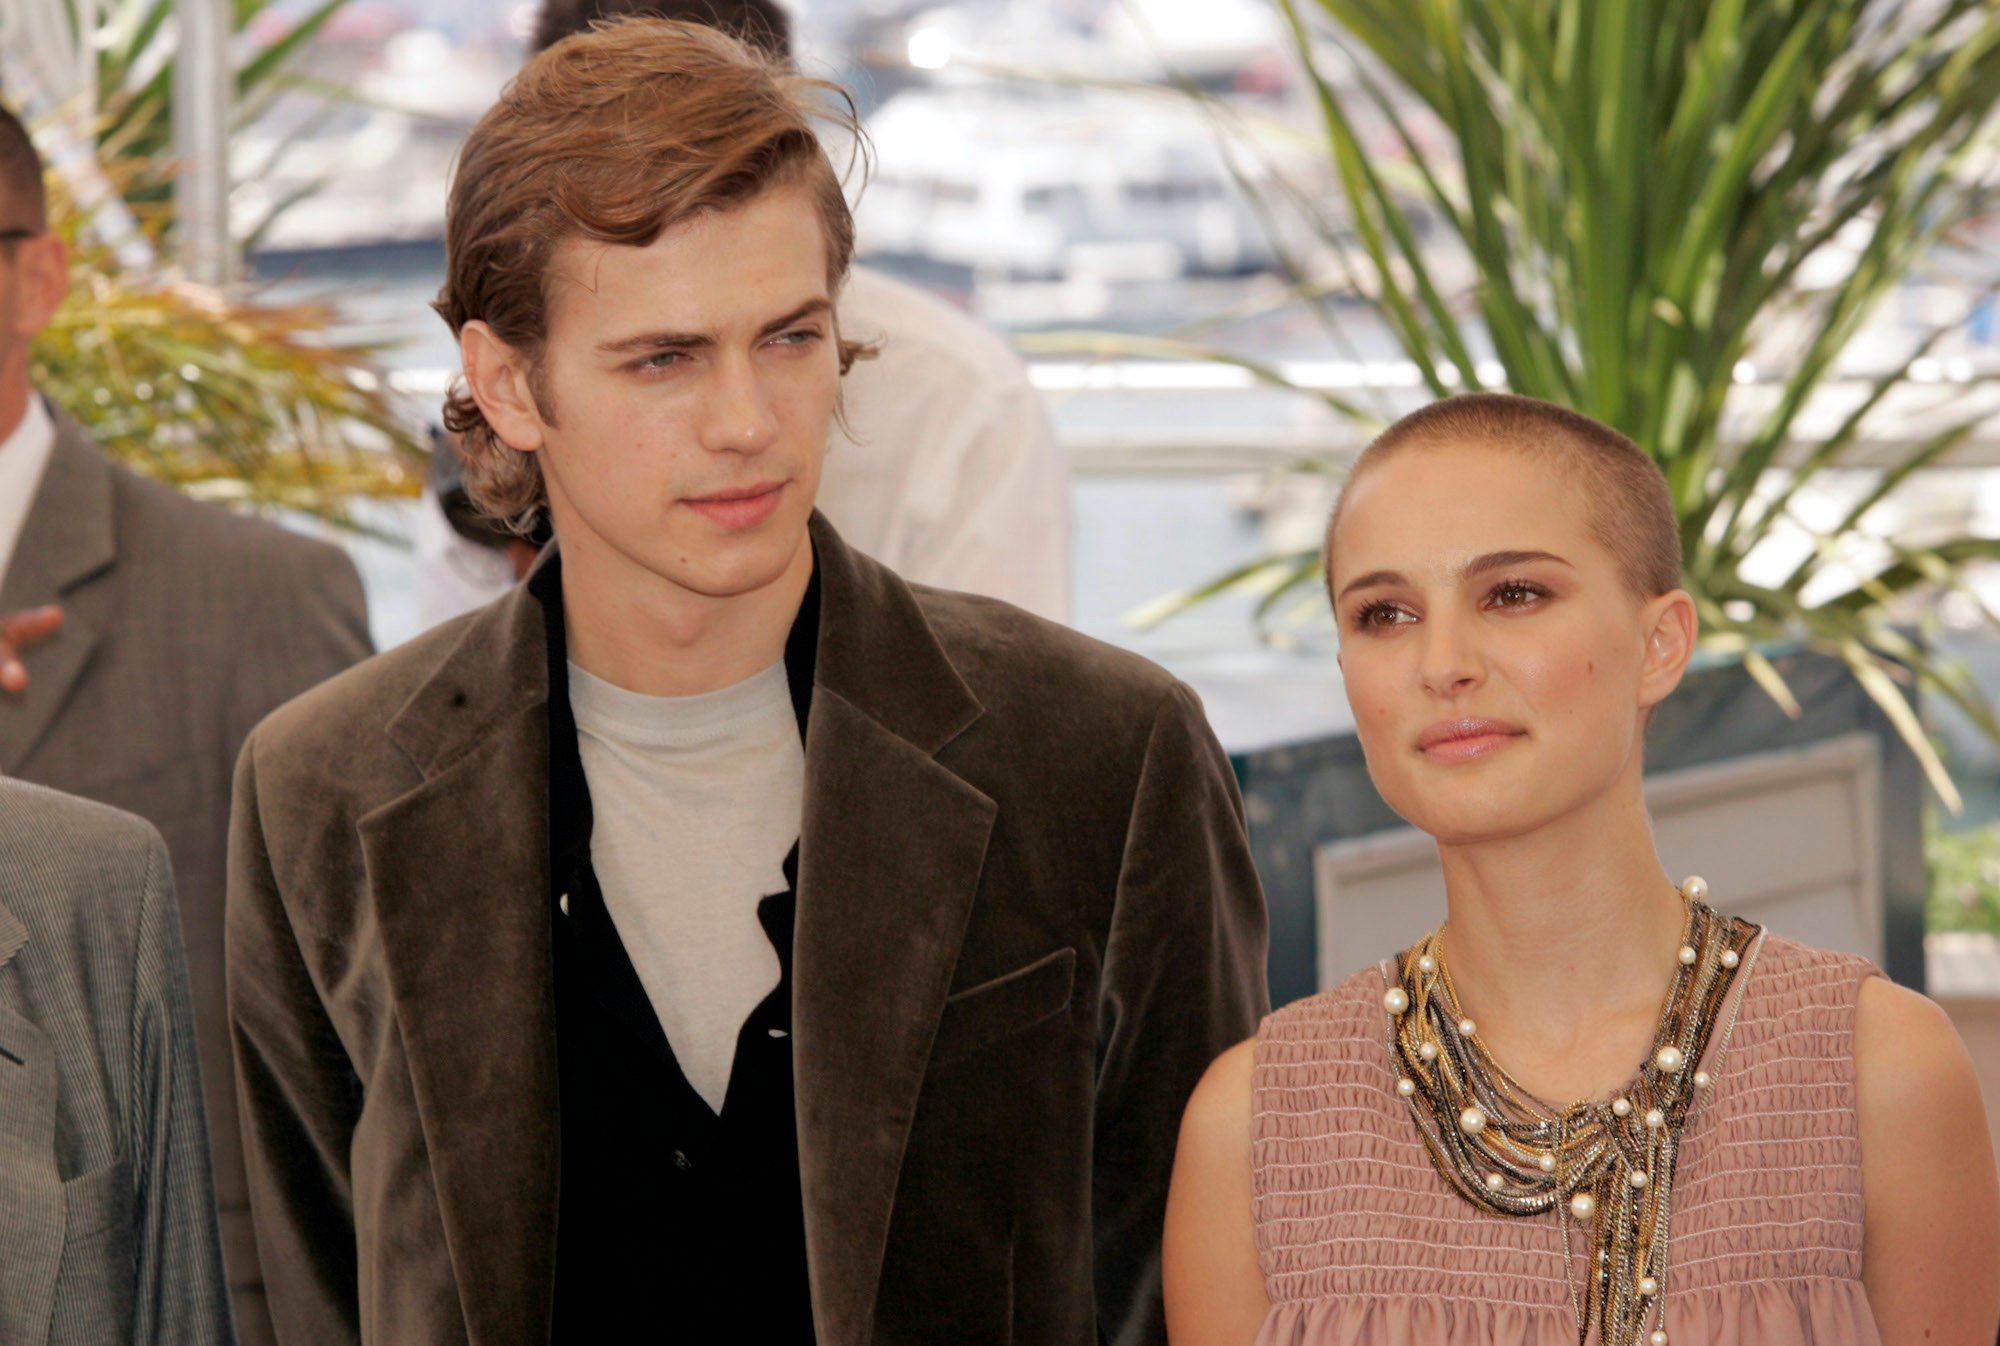 Hayden Christensen and Natalie Portman in front of a blurred background